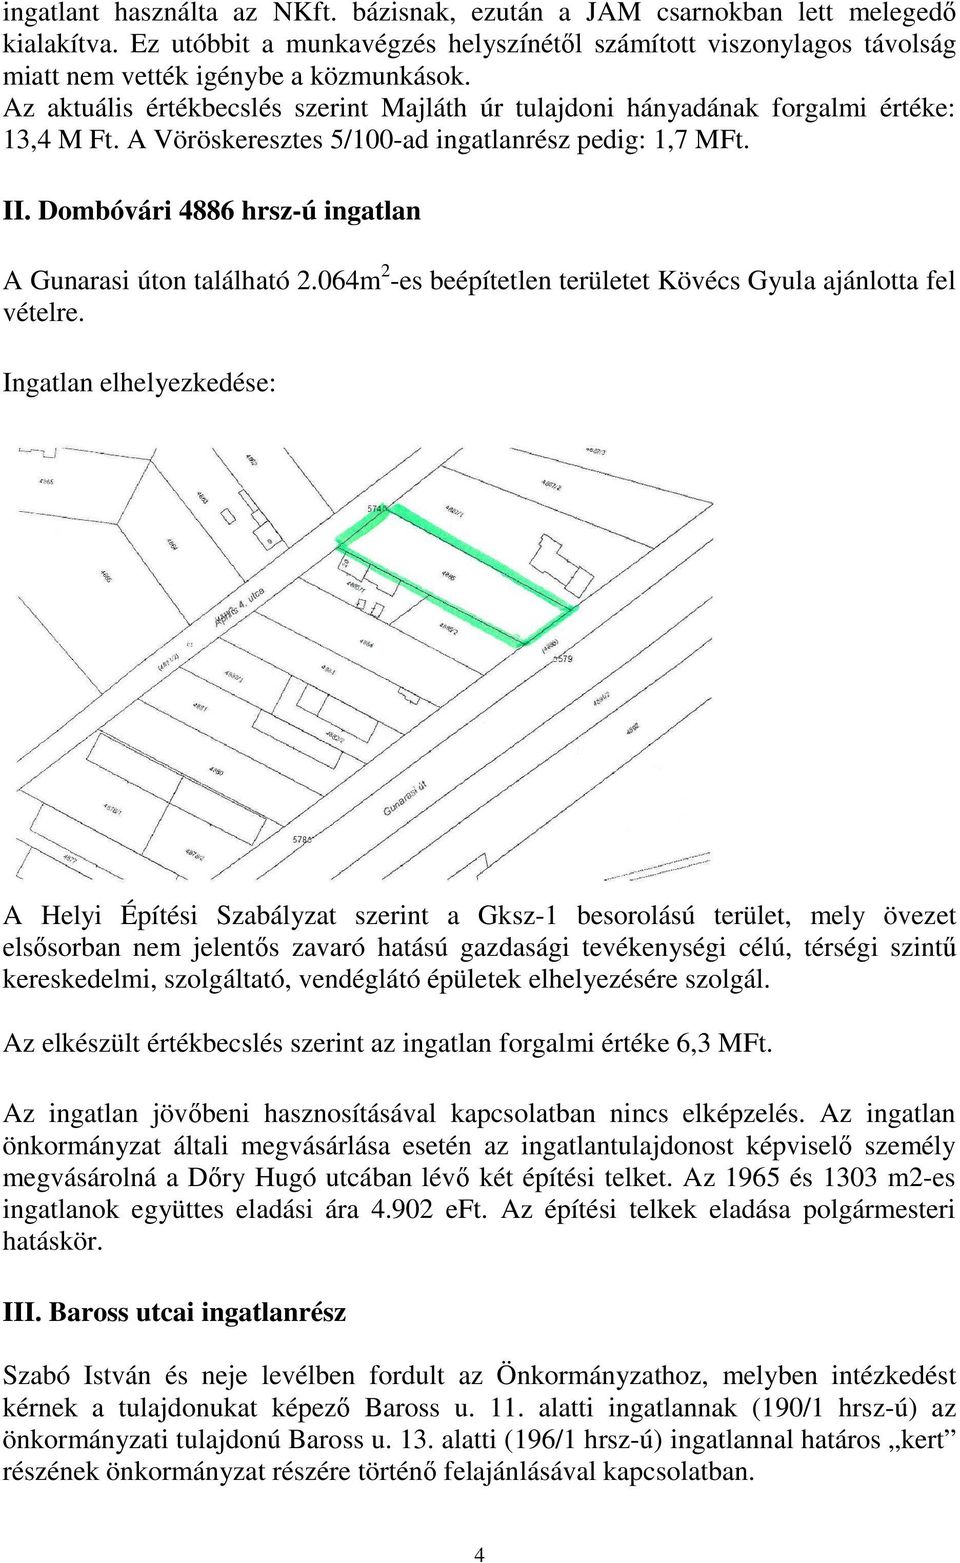 Dombóvári 4886 hrsz-ú ingatlan A Gunarasi úton található 2.064m 2 -es beépítetlen területet Kövécs Gyula ajánlotta fel vételre.